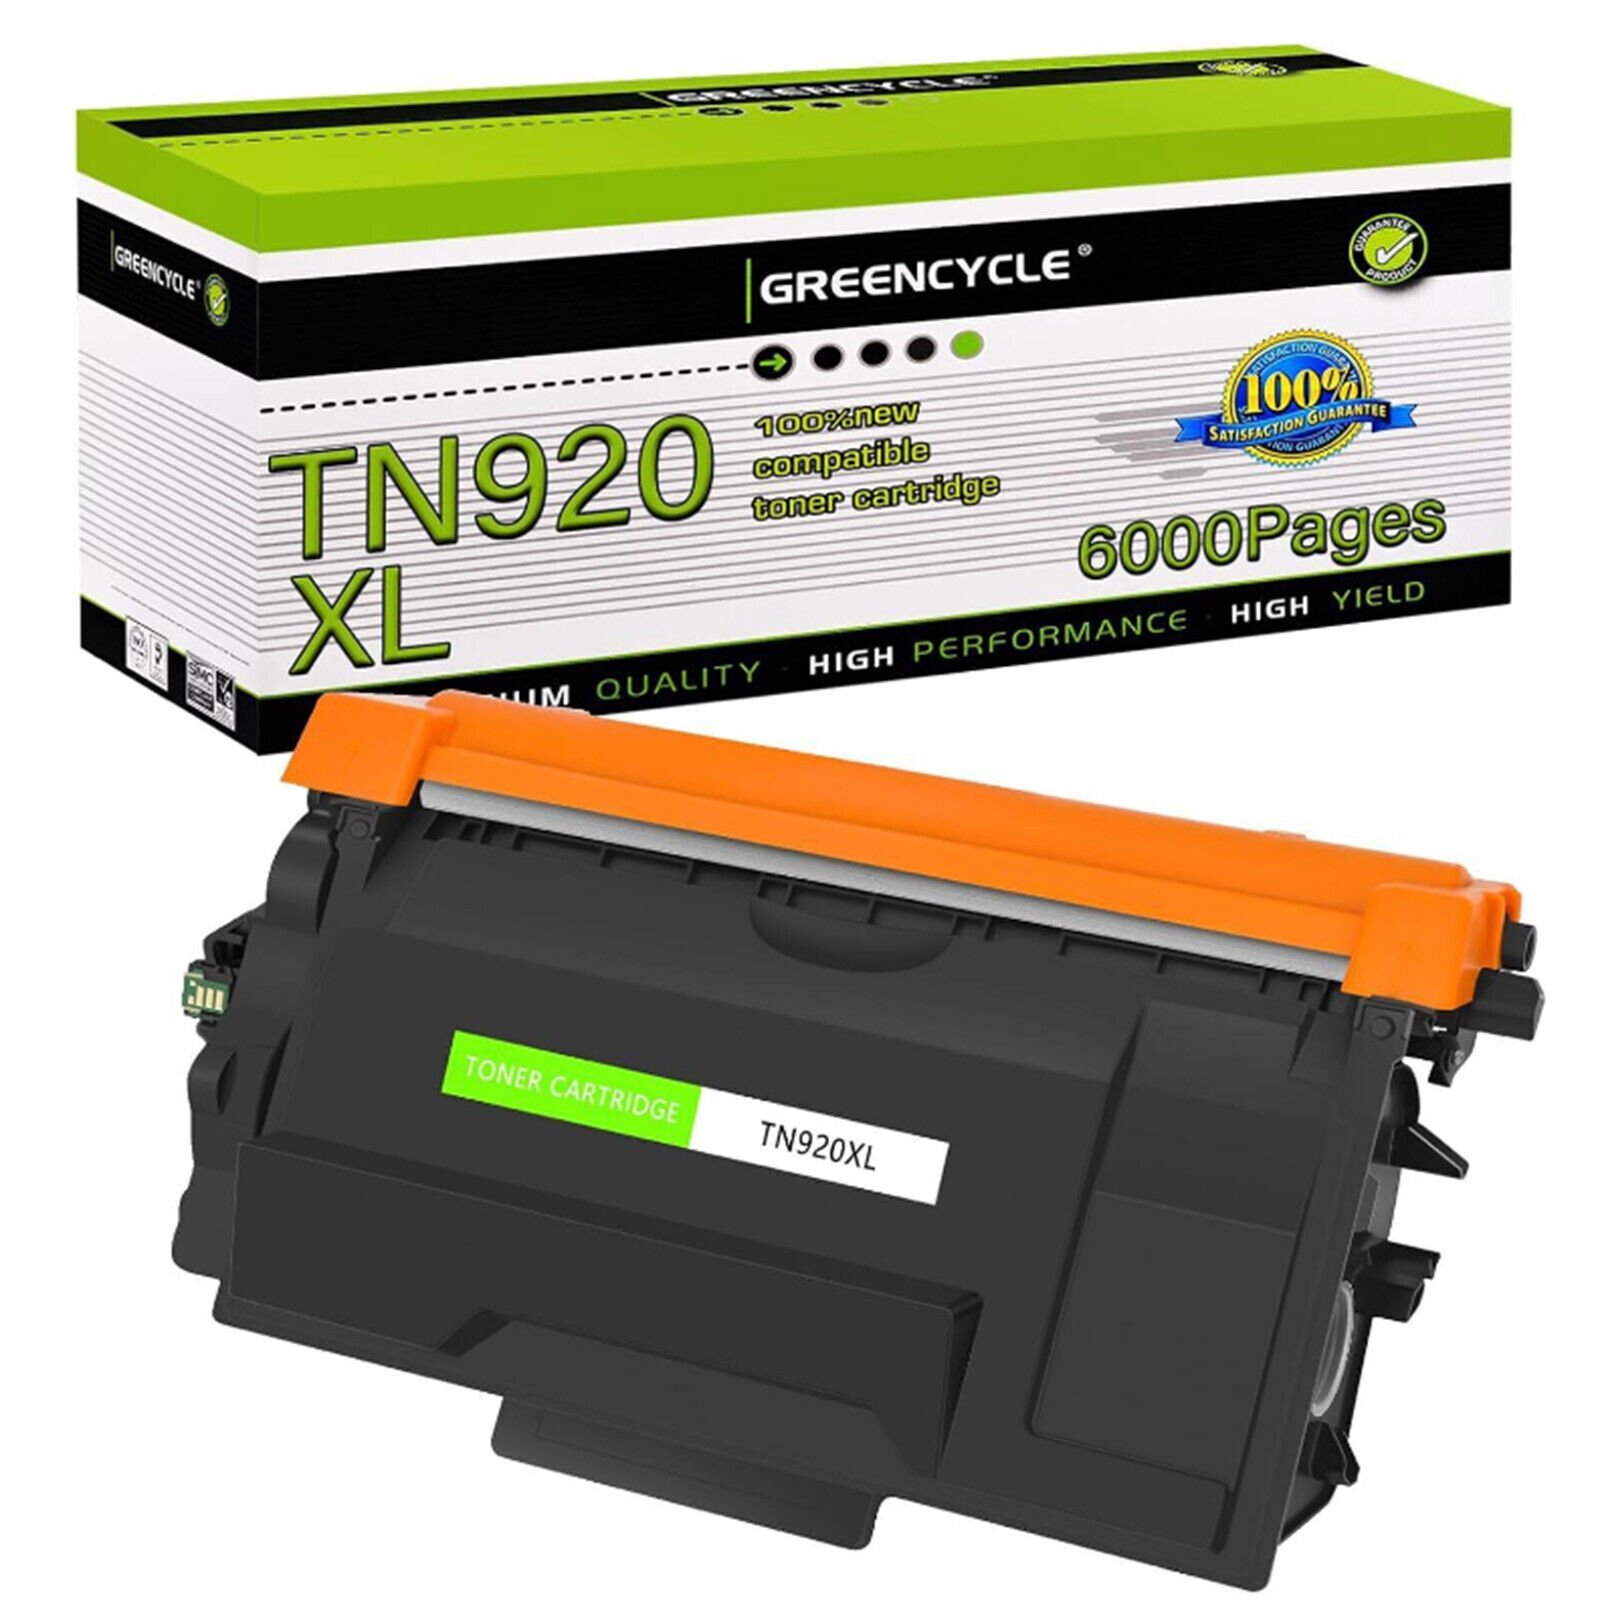 Lot TN920 Toner Cartridge for Brother MFC-L6810DW HL-L5215DW HL-L6210DW TN920xl